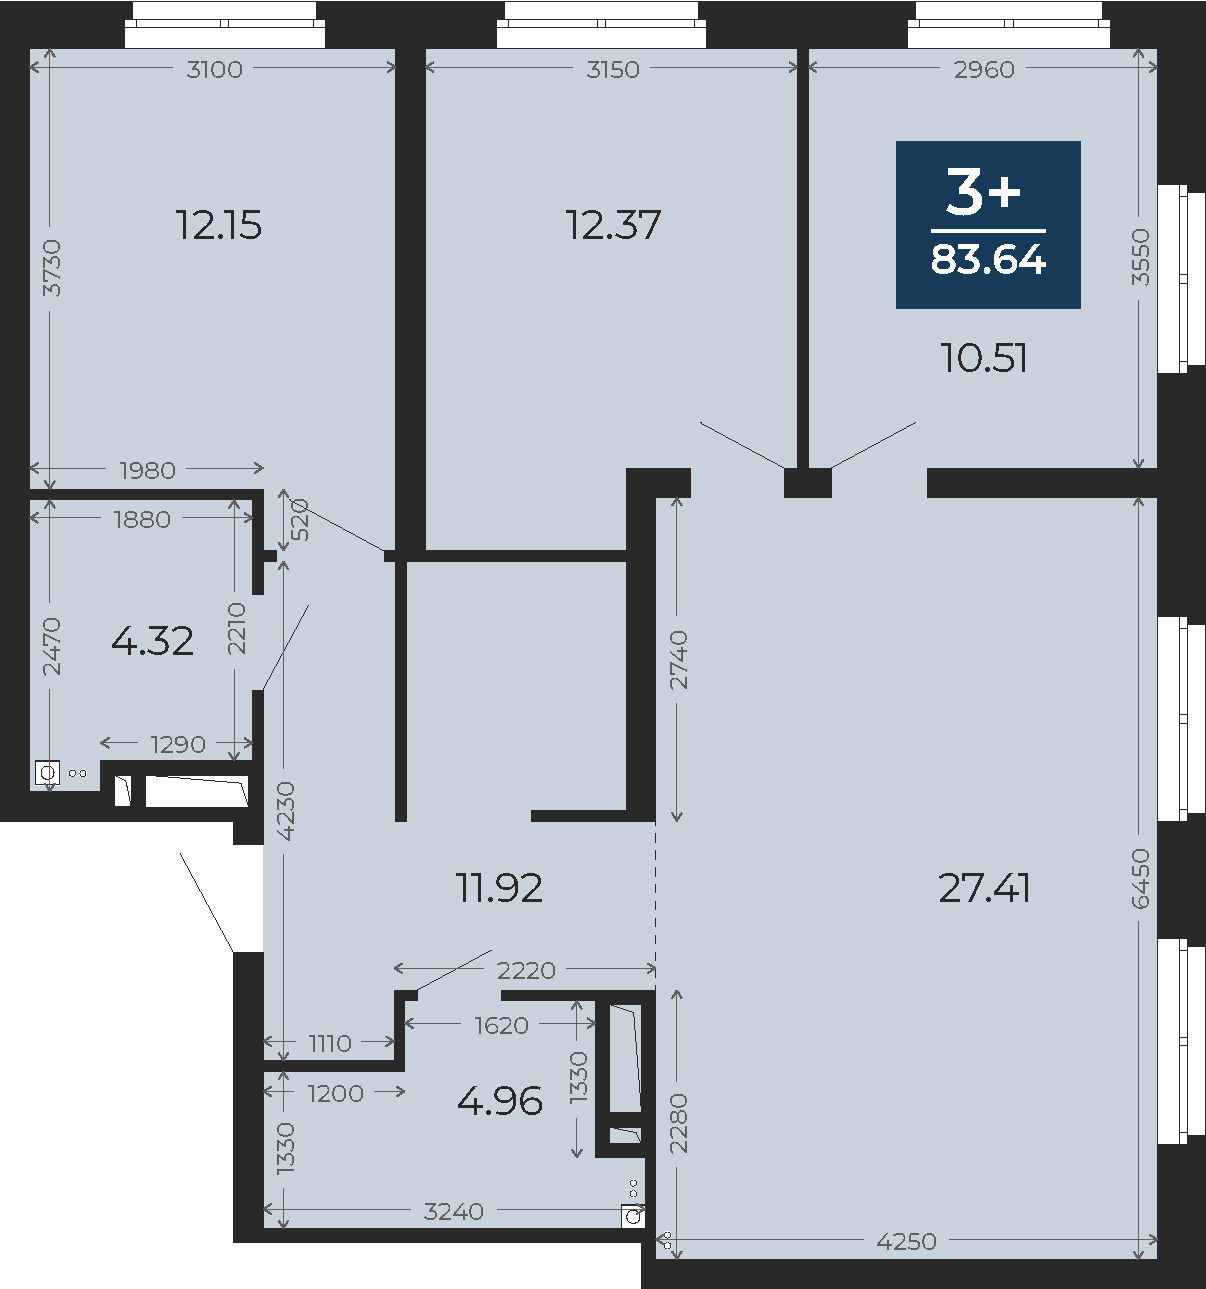 Квартира № 245, 3-комнатная, 83.64 кв. м, 19 этаж